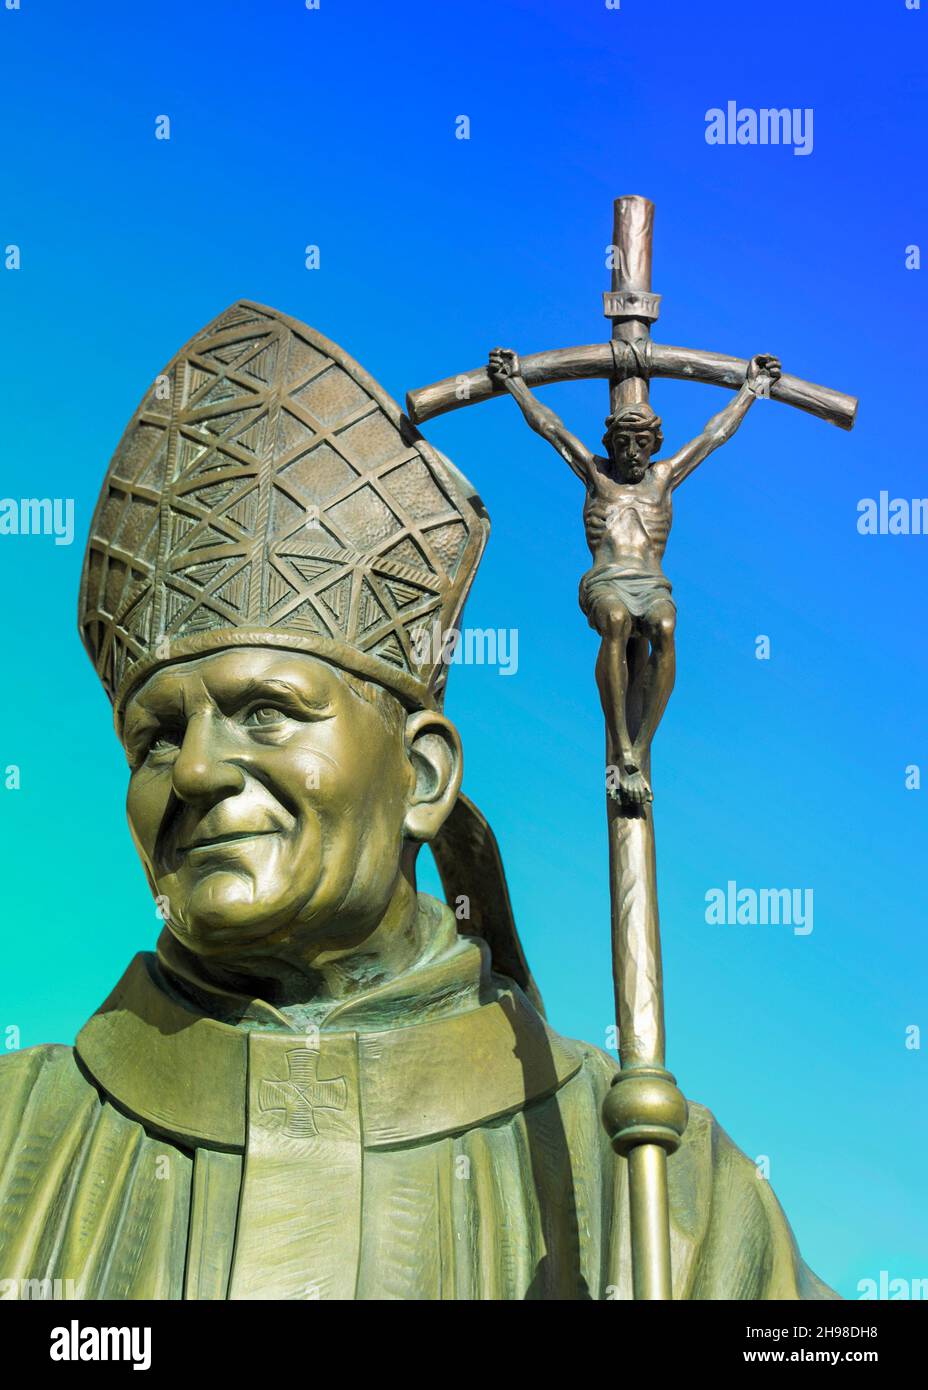 Skulptur oder Denkmal für Papst Johannes Paul II. In der Stadt Santa Clara, Villa Clara, Kuba. November 12, 2021 Stockfoto